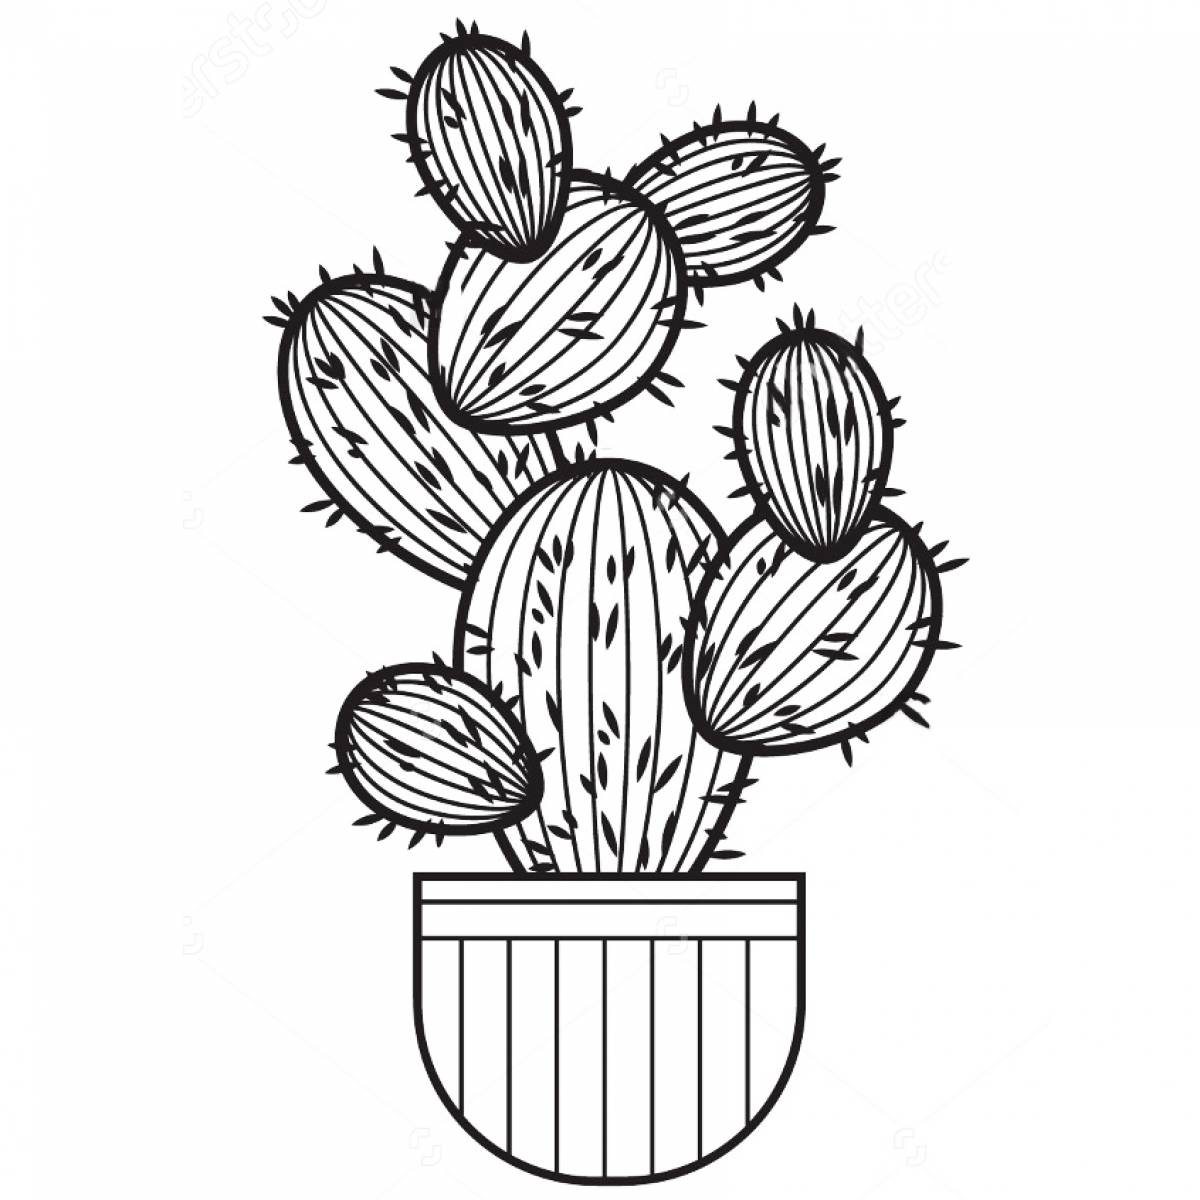 Bizarre cactus